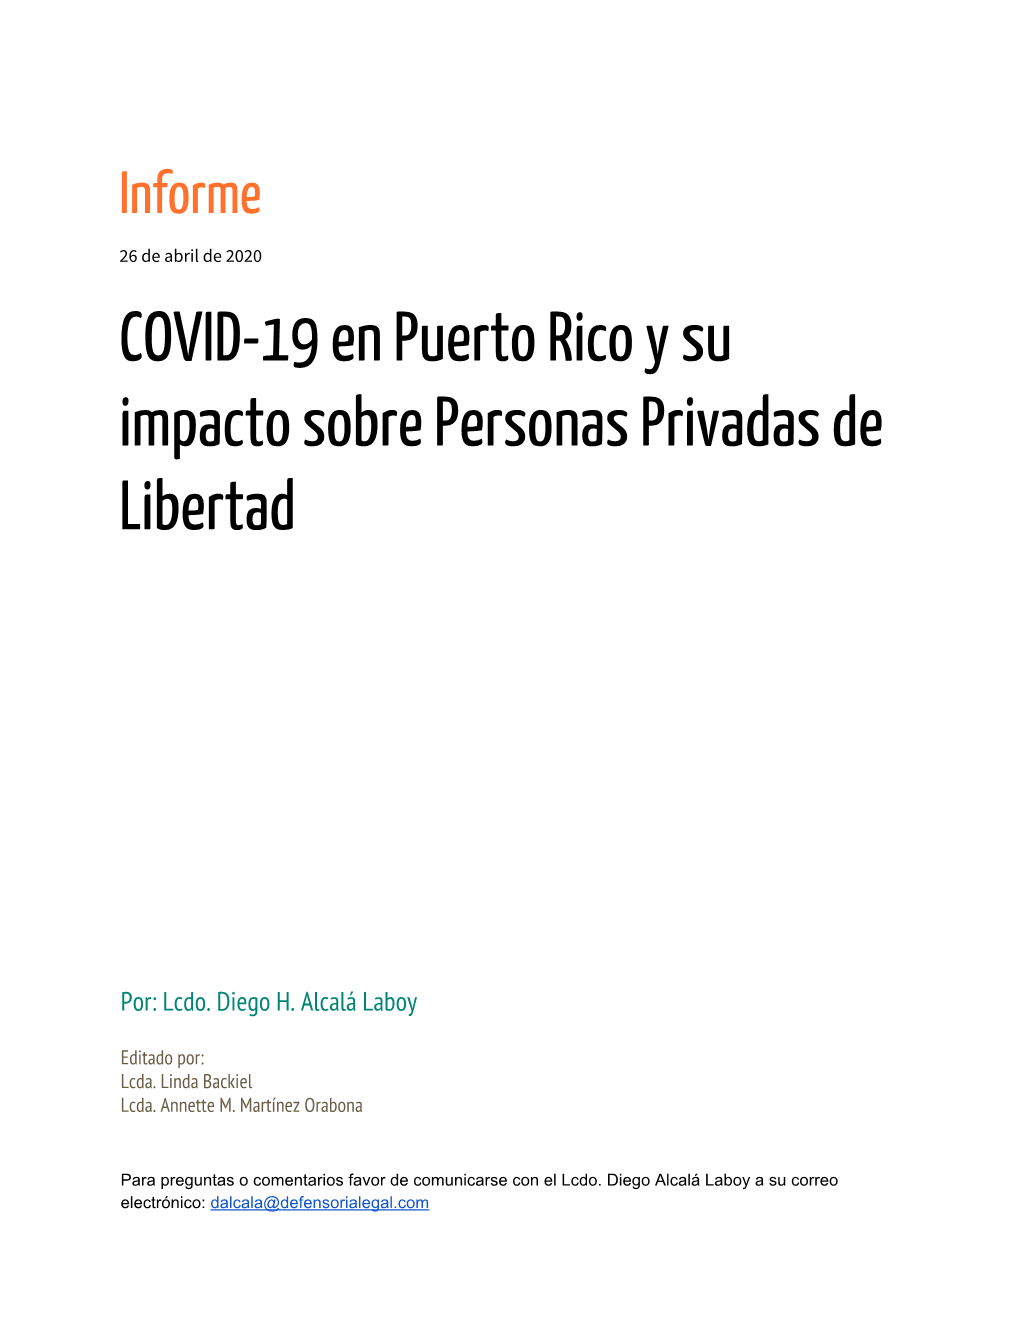 COVID-19 En Puerto Rico Y Su Impacto Sobre Personas Privadas De Libertad